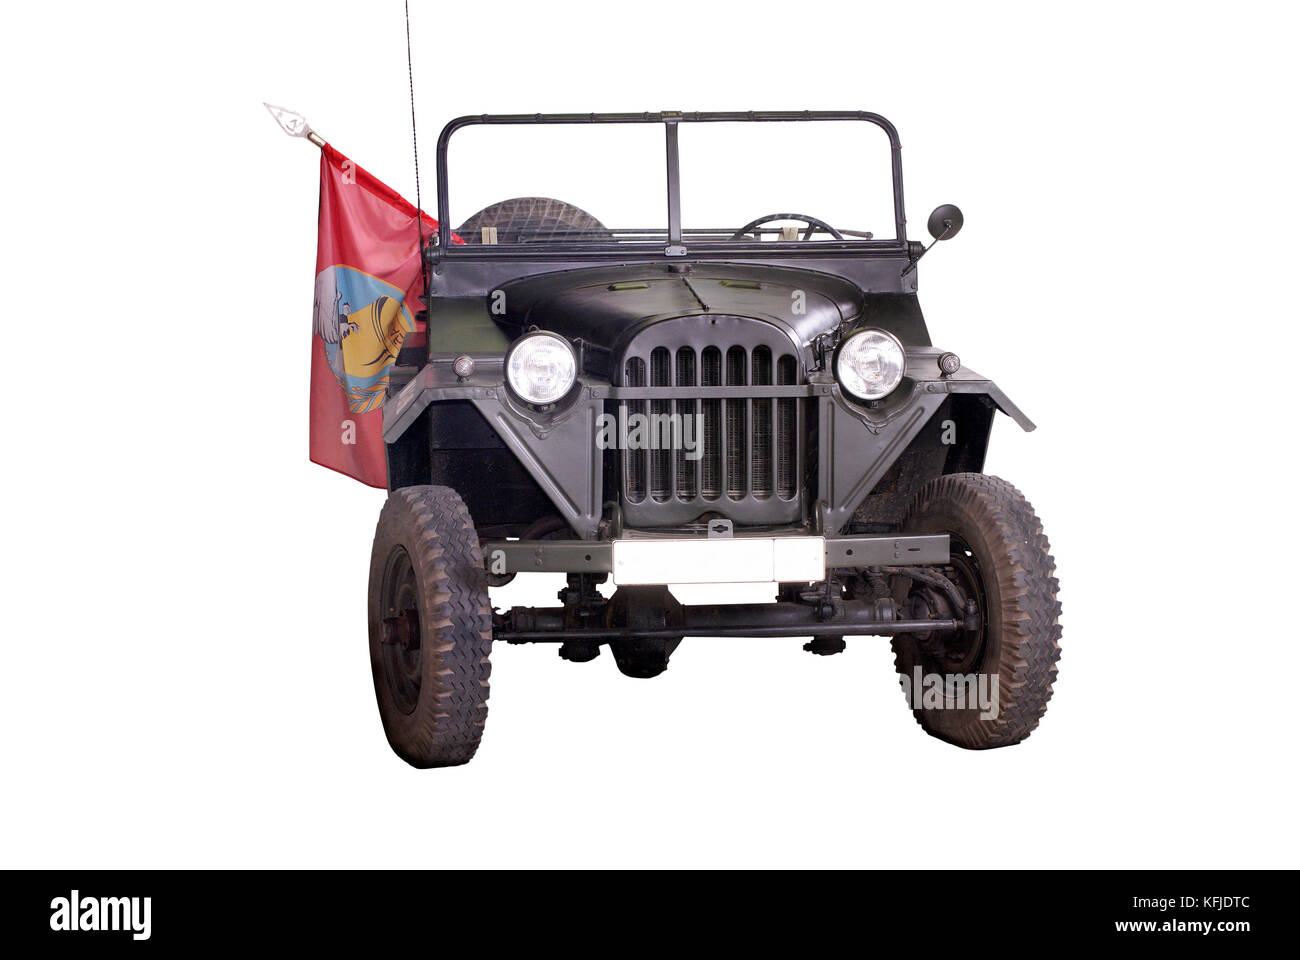 Militare sovietica " JEEP " (gaz 67 - Modello del 1940) lungo con la leggendaria lend lease willys era base per auto ufficiale di personale durante il WW2. Foto Stock